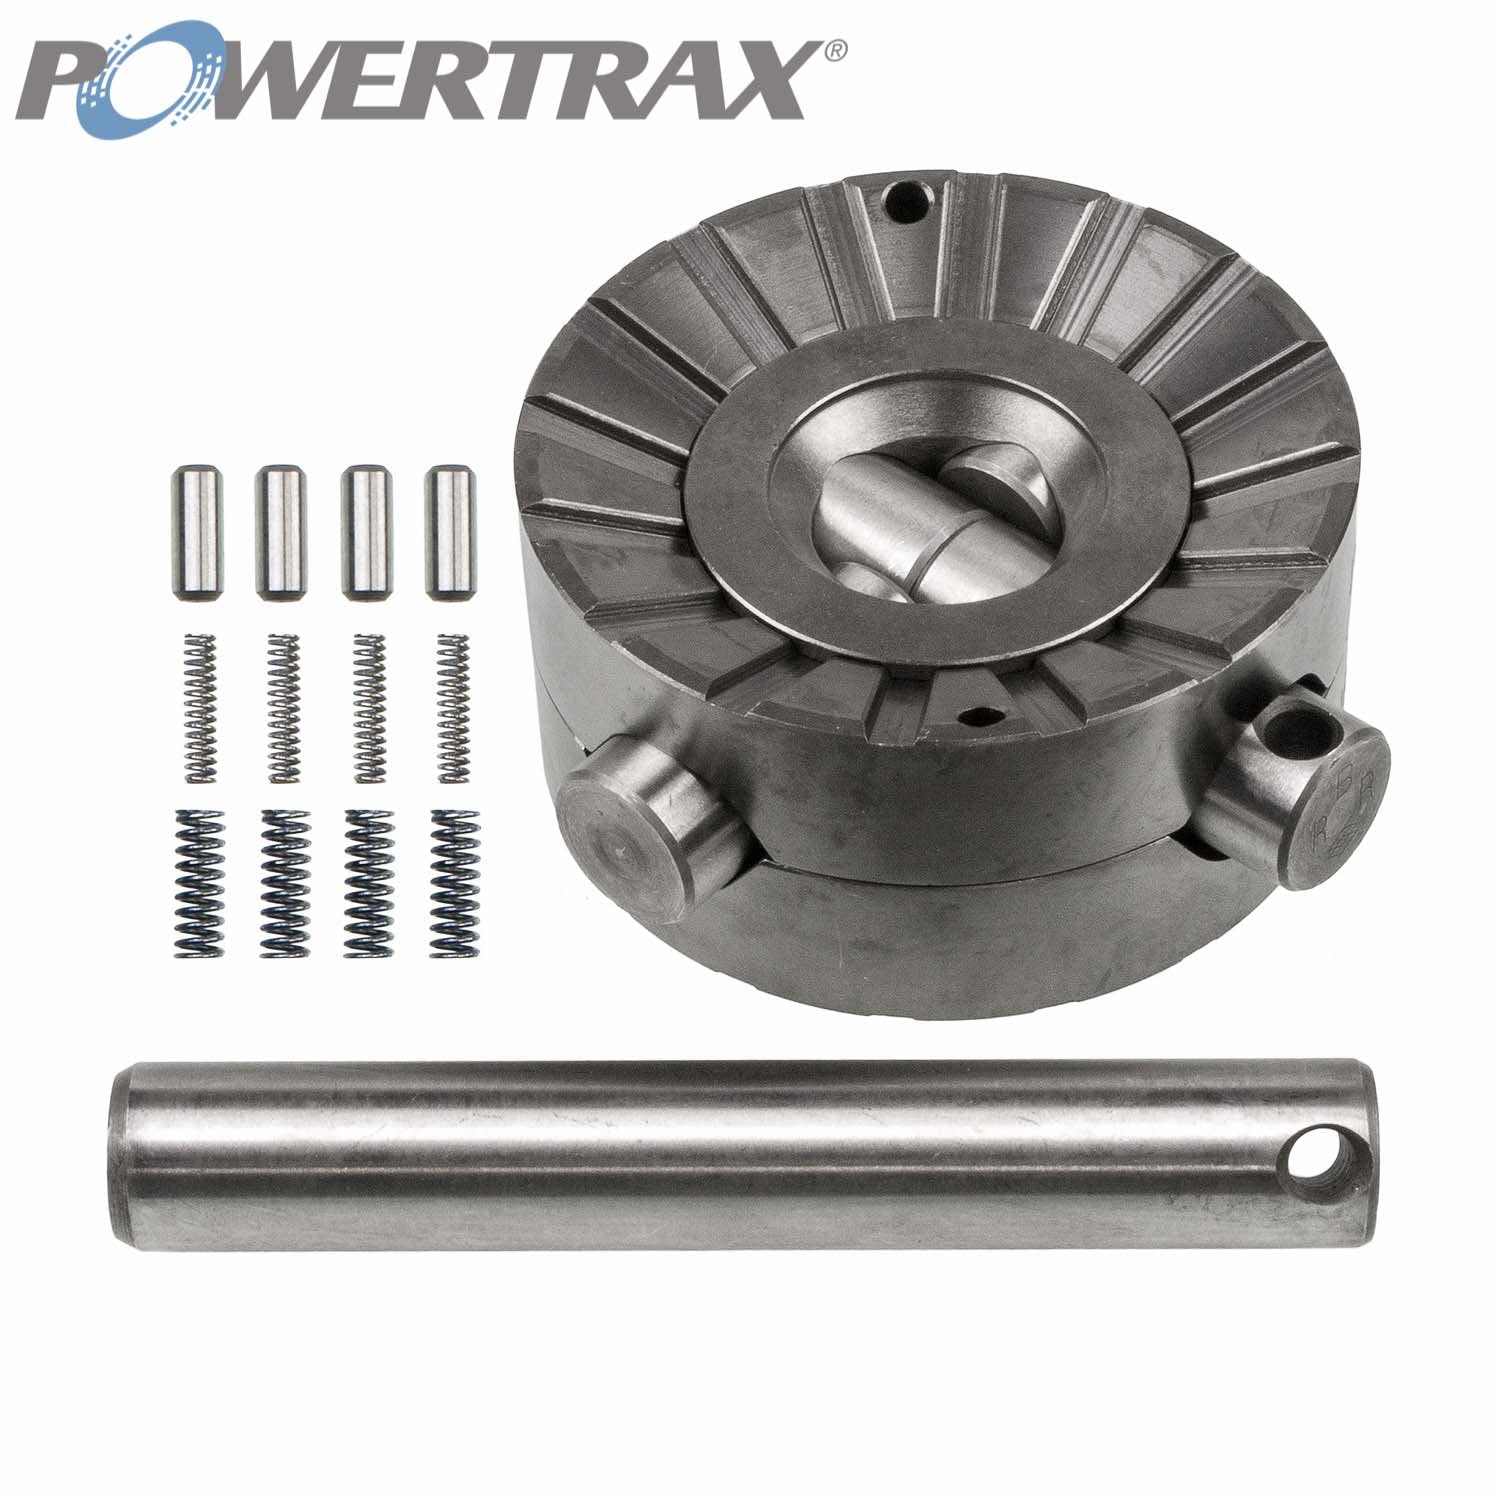 PowerTrax 1810-LR Lock Right Locker